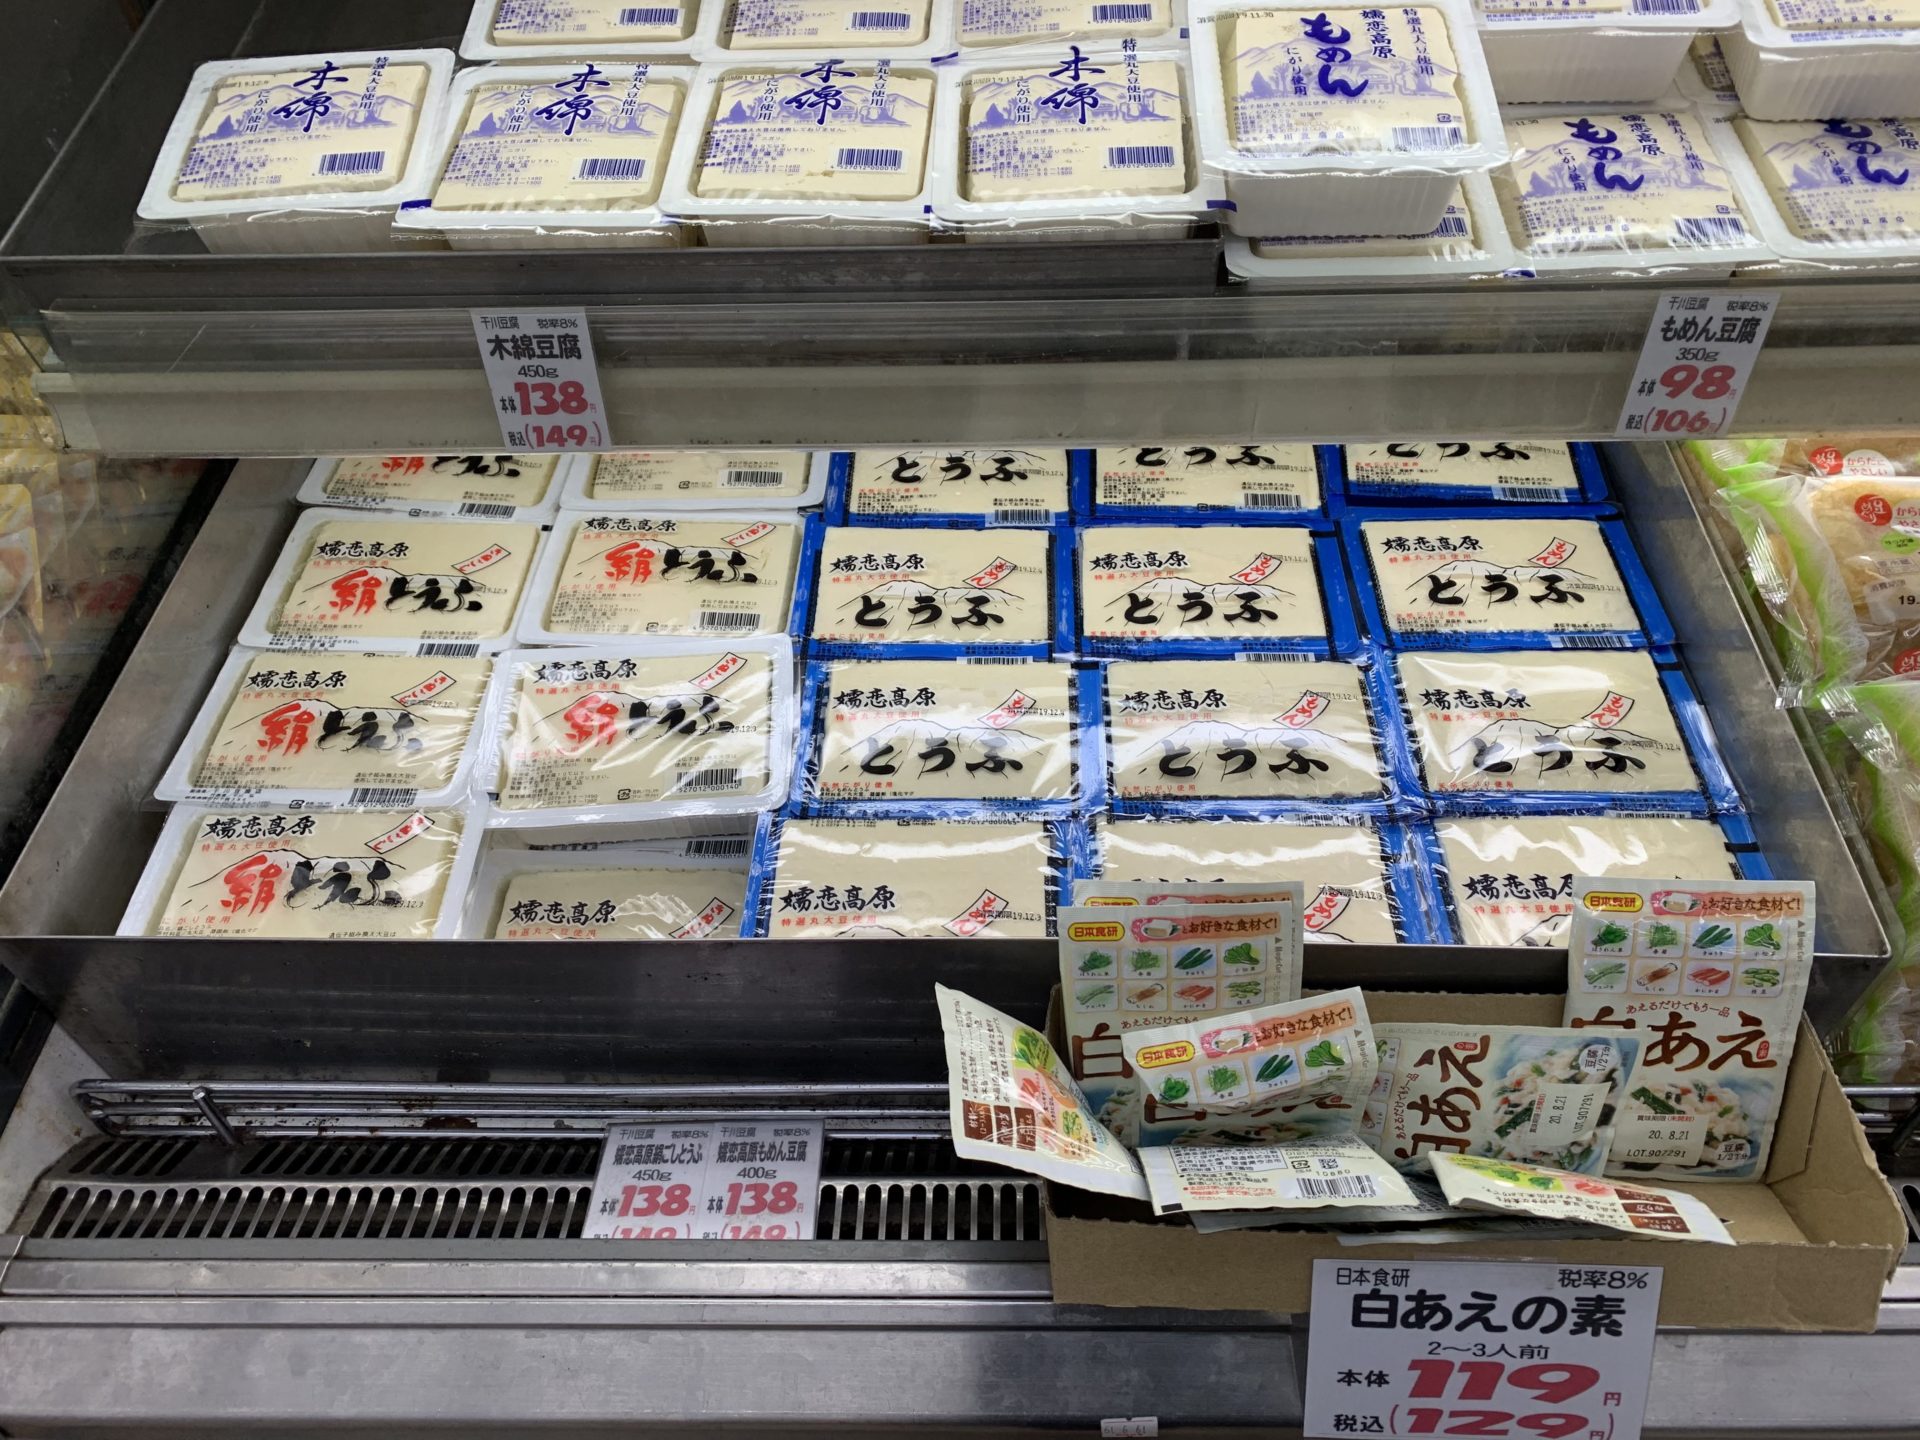 卸売センター「サンエイ」店内の嬬恋高原豆腐